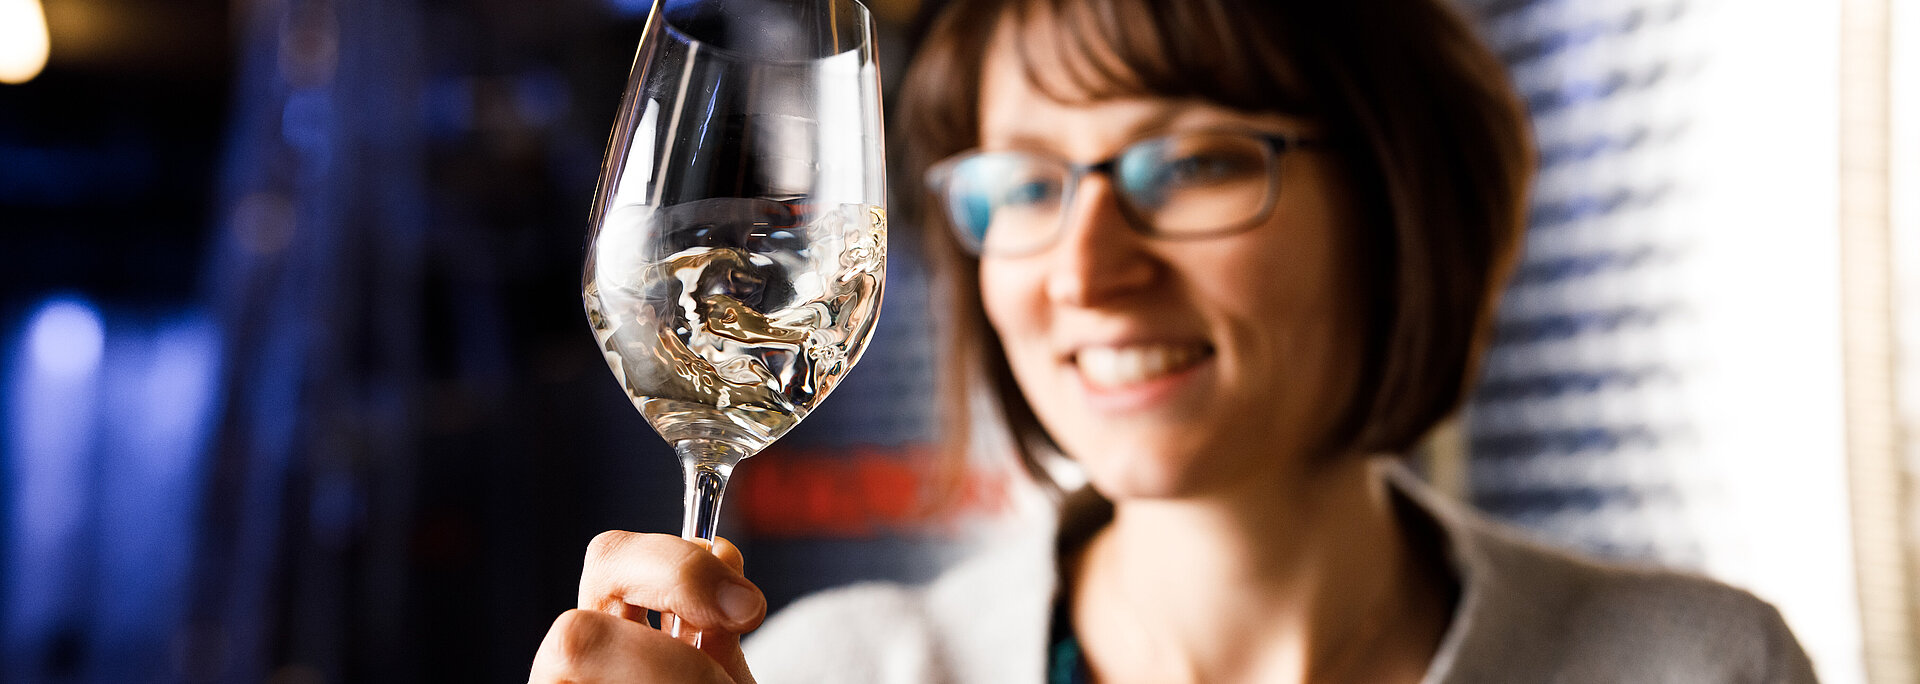 Monika Neustifter steht im Weinkeller vor einem Stahltank und schwenkt ein Wein im Weißweinglas. Der Fokus liegt auf dem Weinglas, während Monika verschwommen im Hintergrund steht.